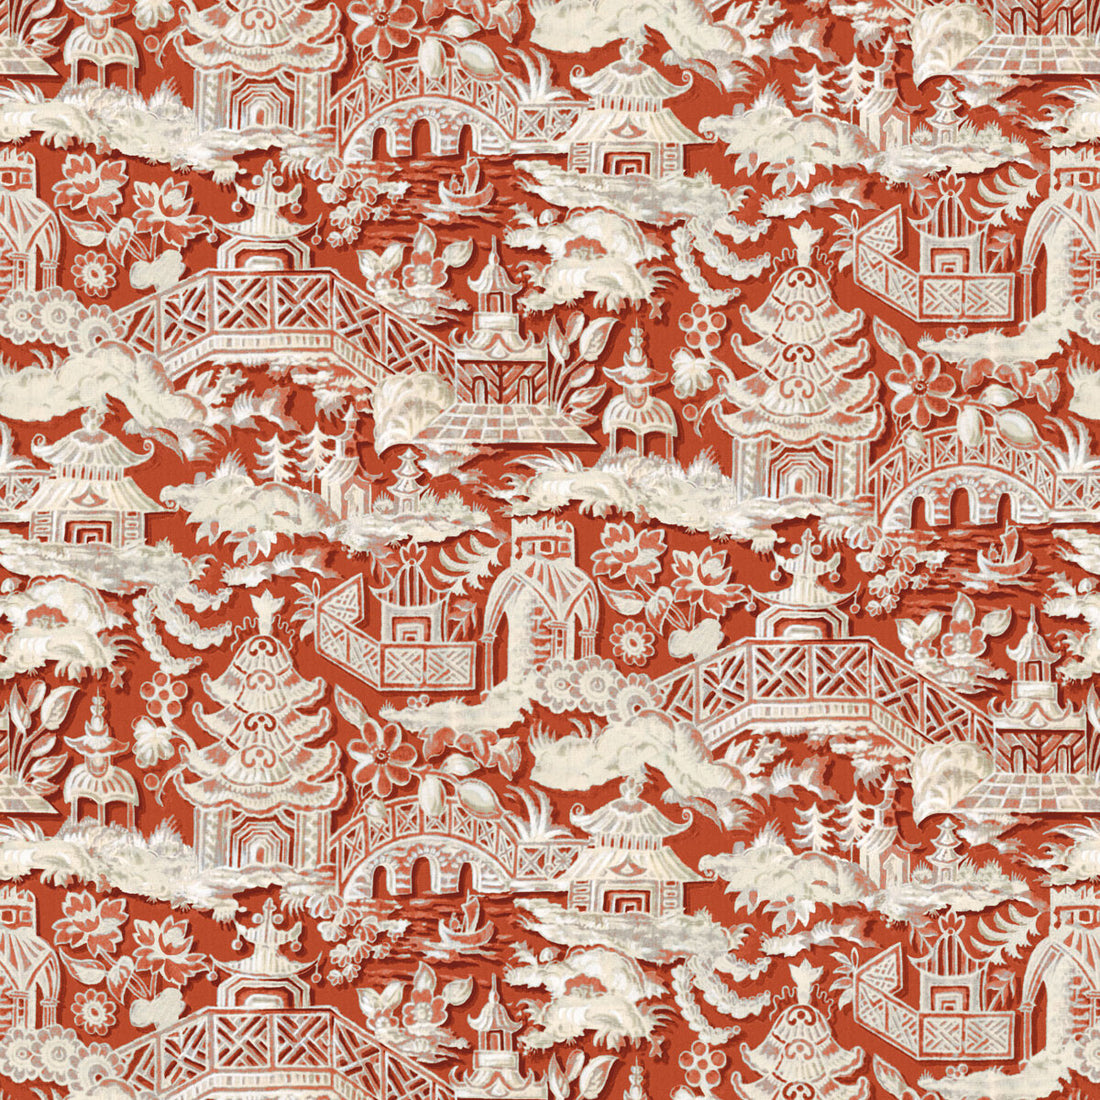 Marta fabric in teja color - pattern LCT1048.004.0 - by Gaston y Daniela in the Lorenzo Castillo VI collection